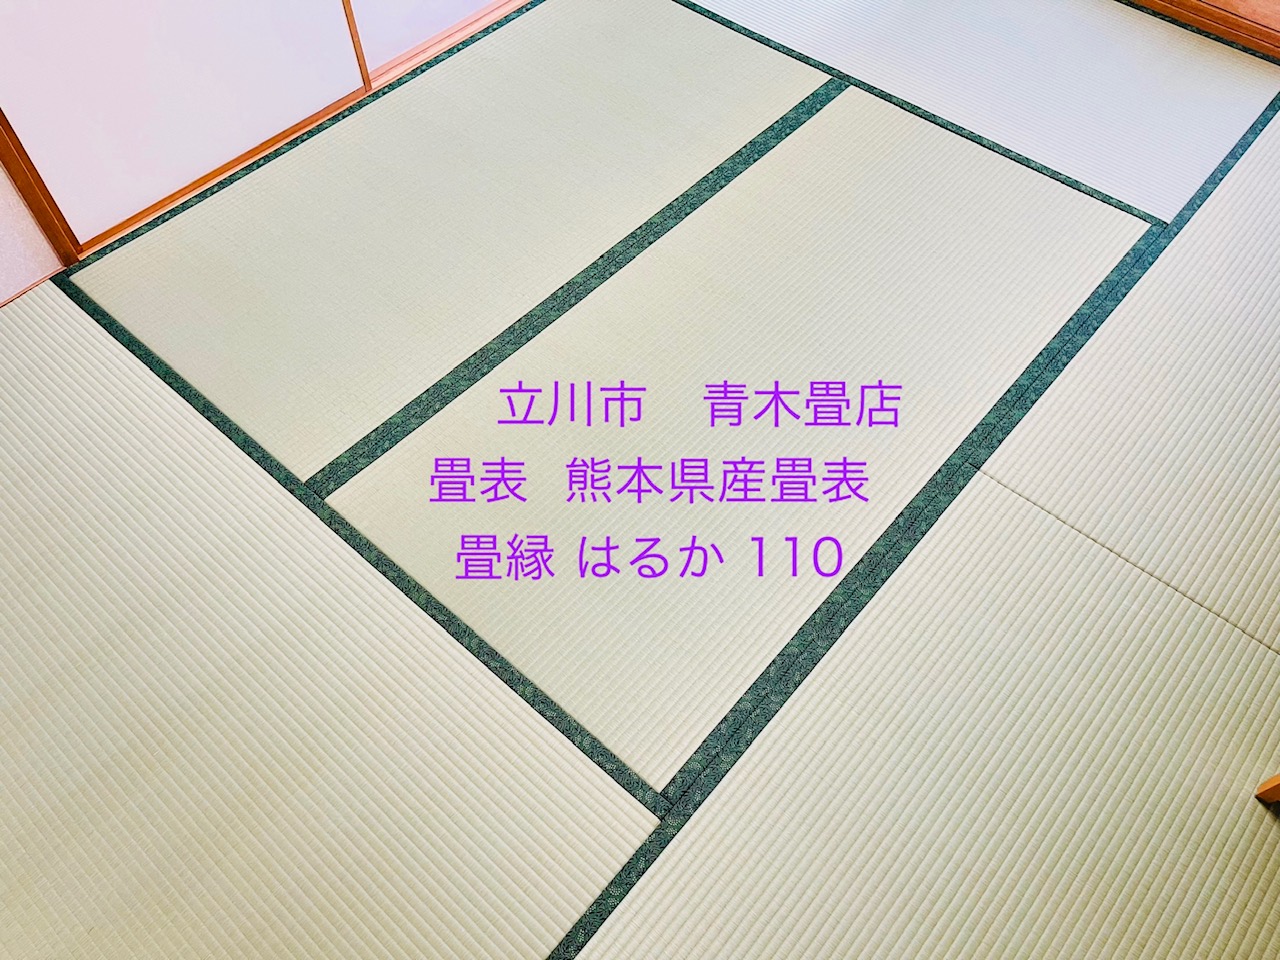 当店で施工させていただいたお客様からのご紹介で熊本県産畳表を使用して畳新調のご依頼です。東京都日野市